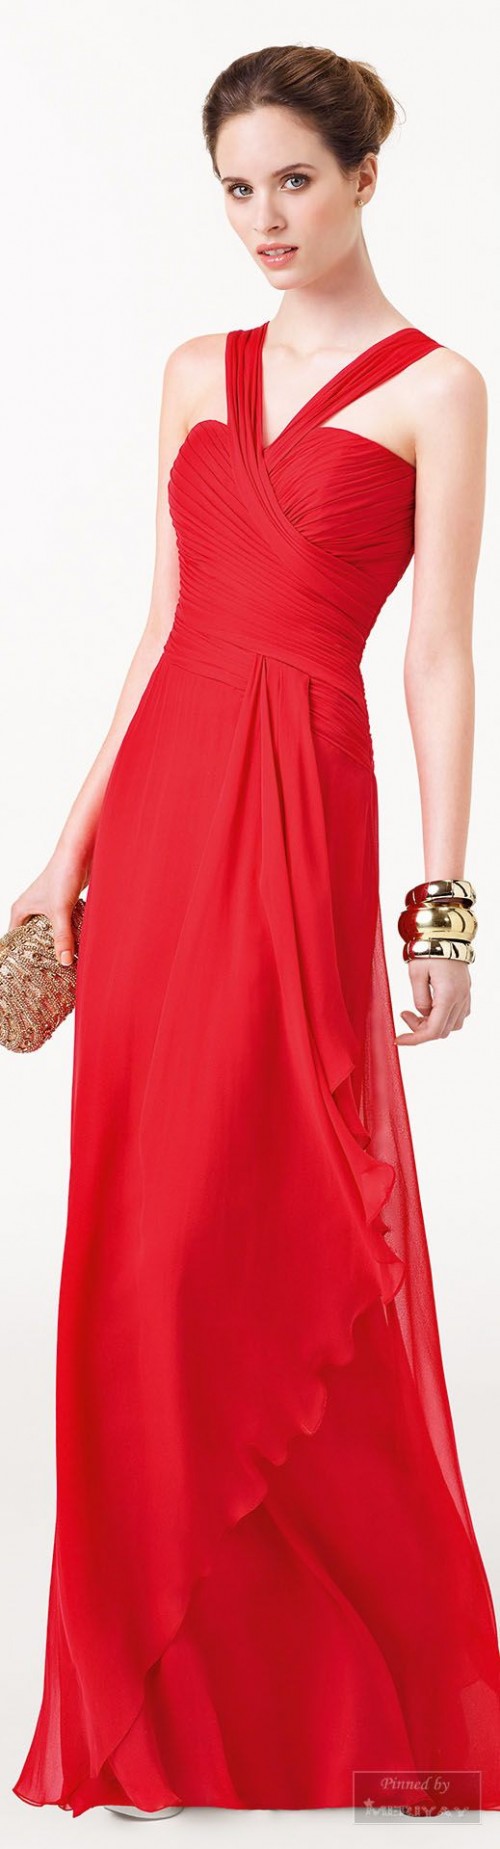 Đầm dạ hội màu đỏ DH-027